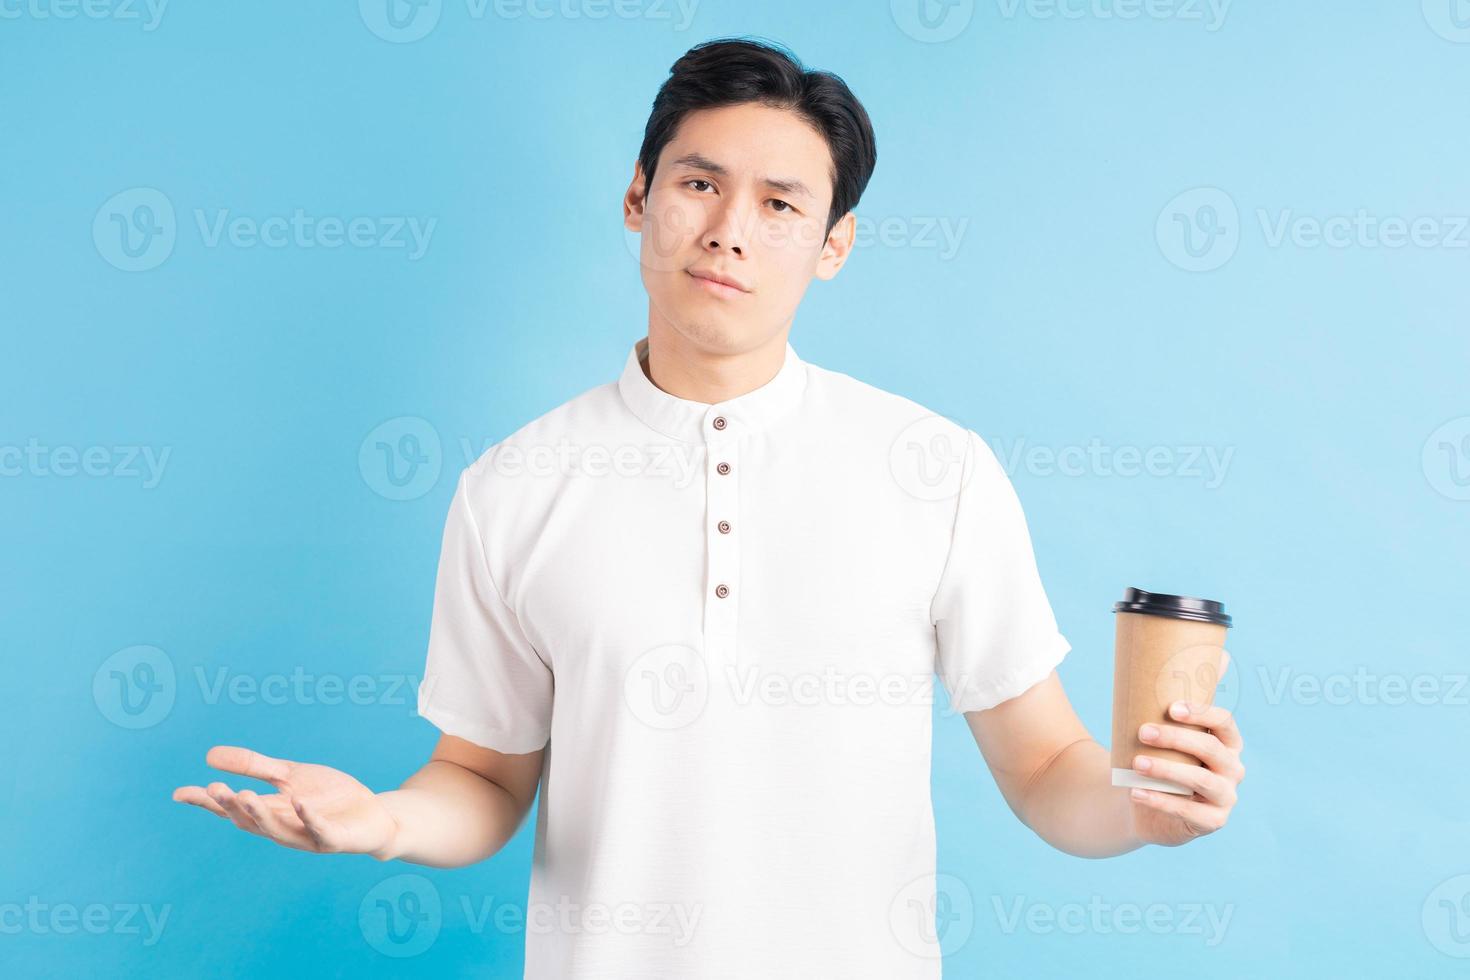 een foto van een knappe Aziatische jongen die een papieren beker in zijn hand houdt met een verbaasde uitdrukking